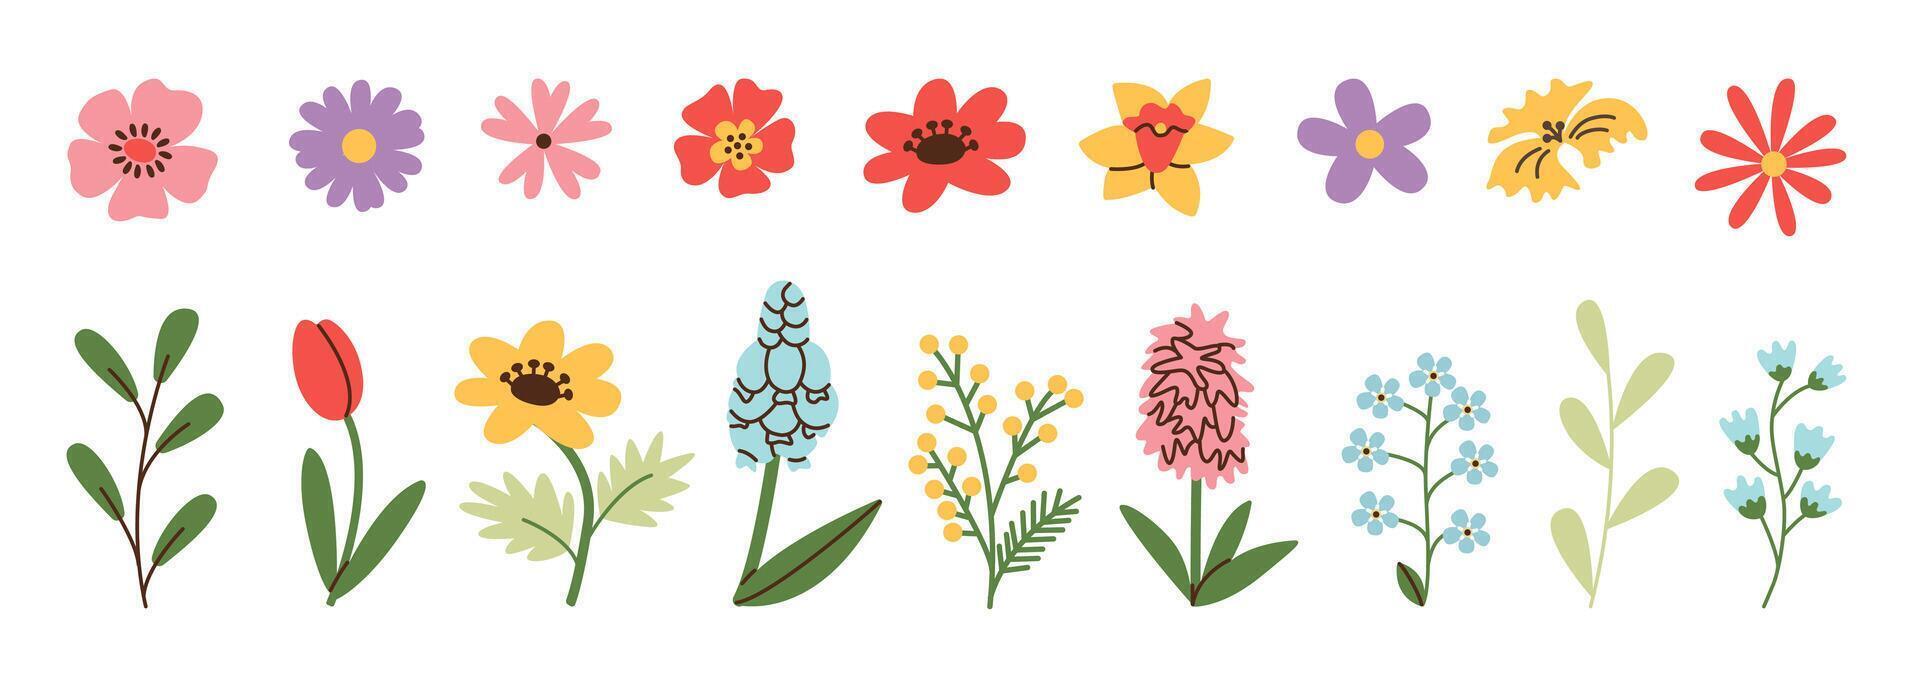 primavera y verano flores colocar. sencillo garabatear flor plantas aislado en blanco antecedentes. vistoso plano vector ilustración.